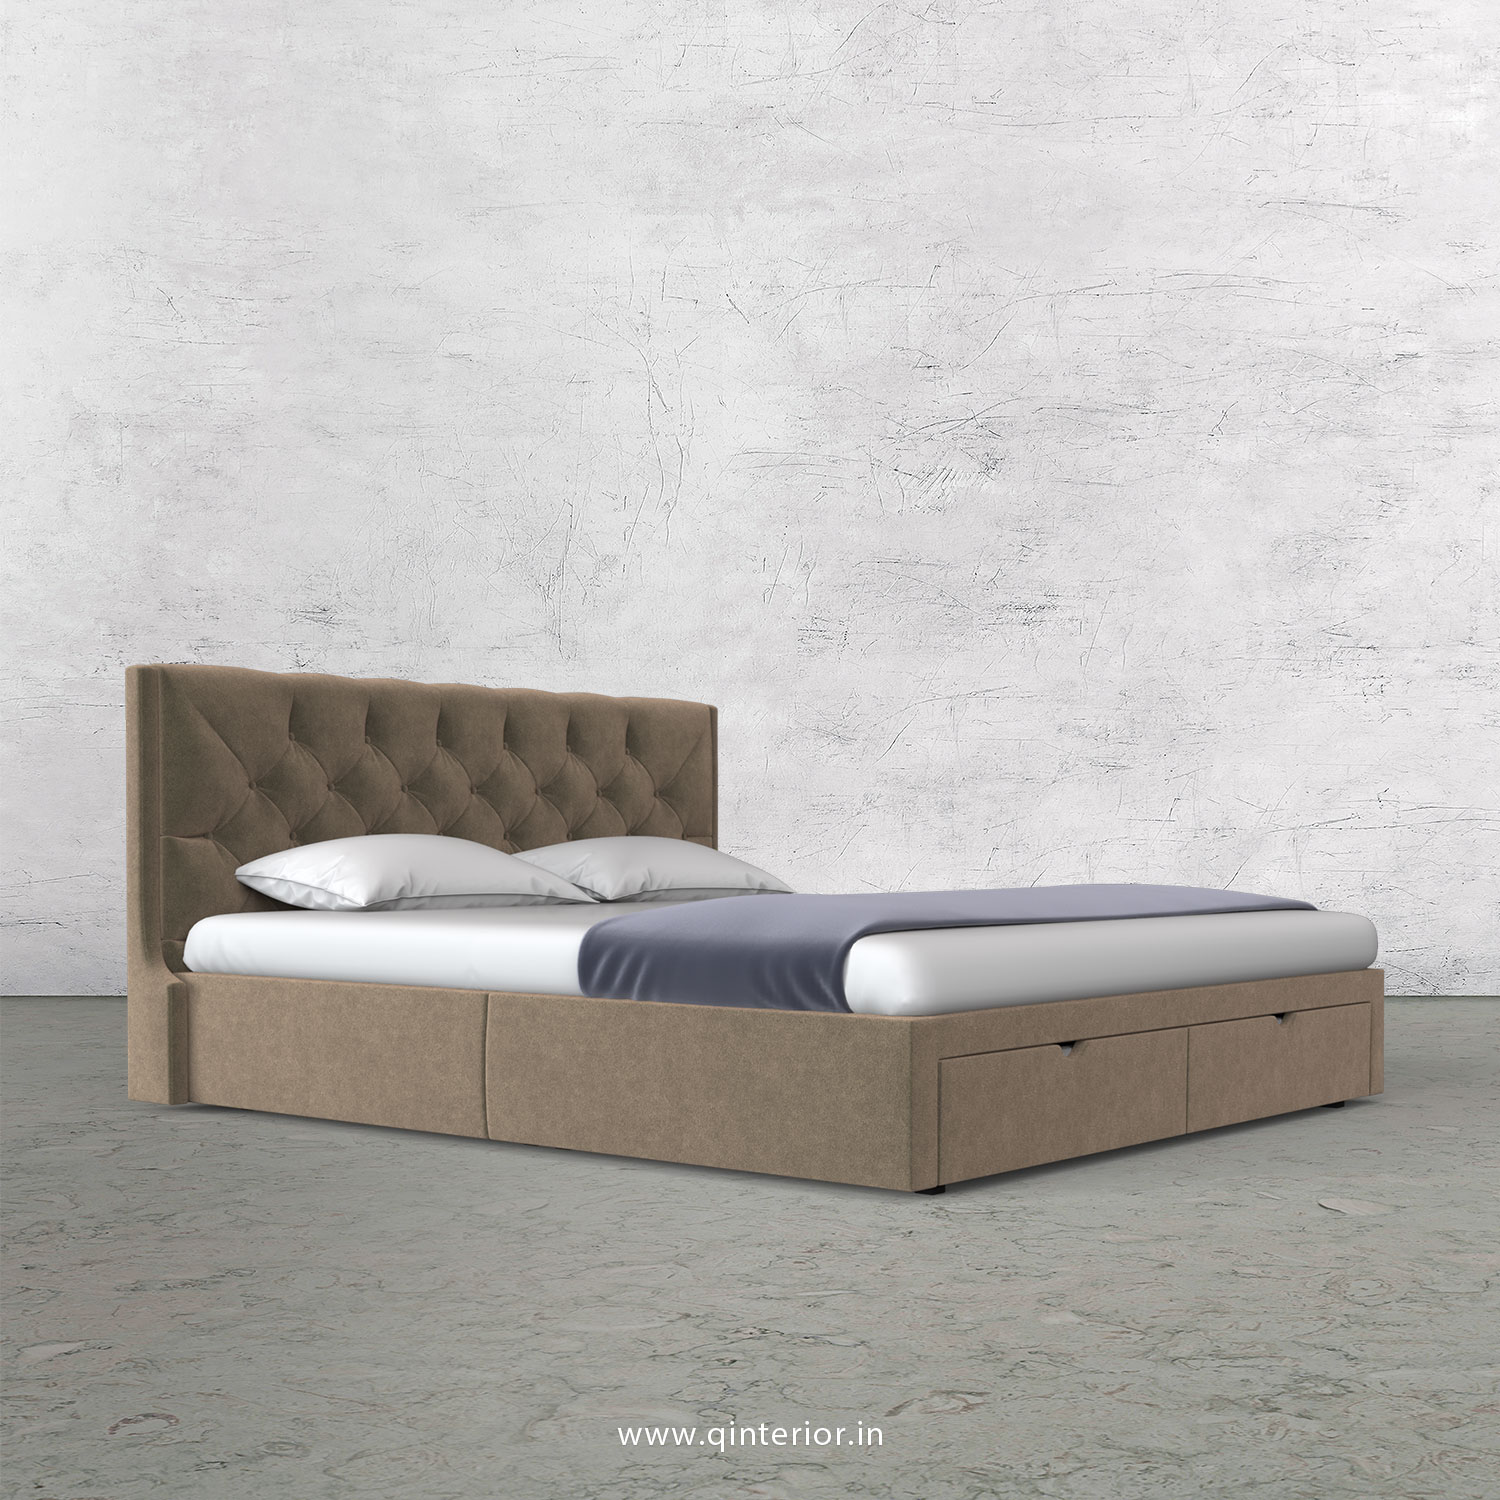 Scorpius Queen Storage Bed in Velvet Fabric - QBD001 VL11